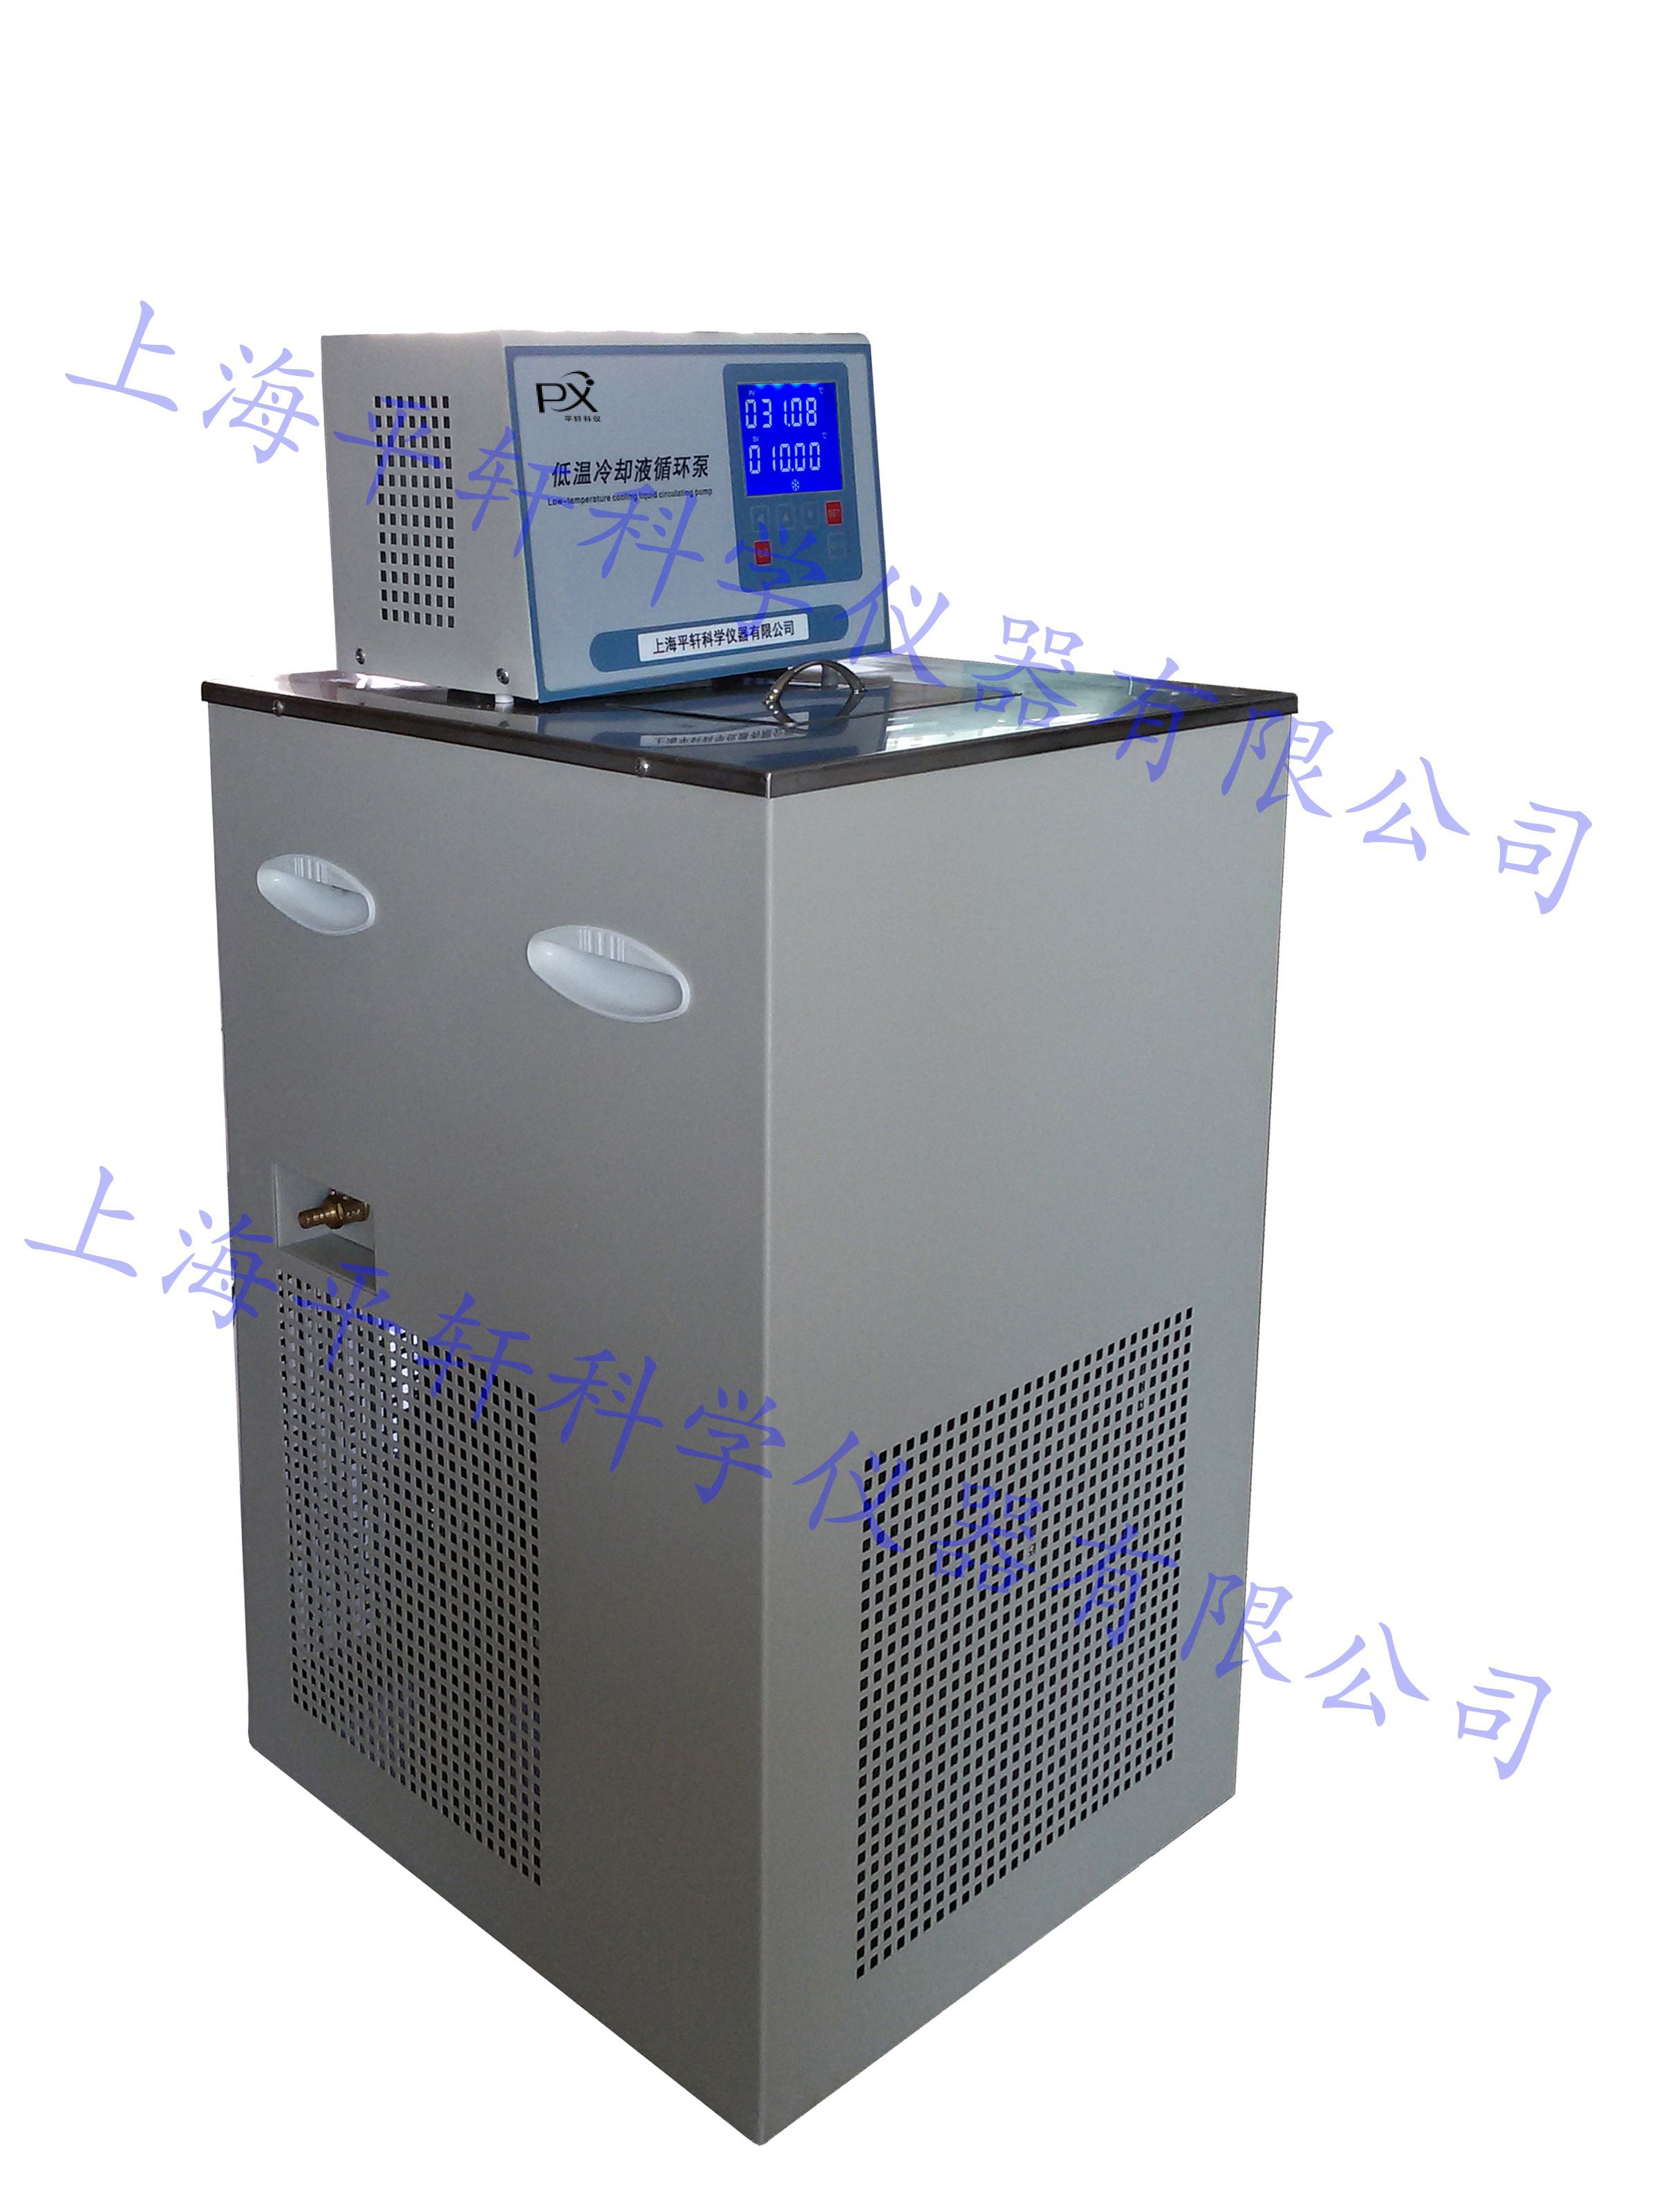 DL-1020低温冷却液循环泵